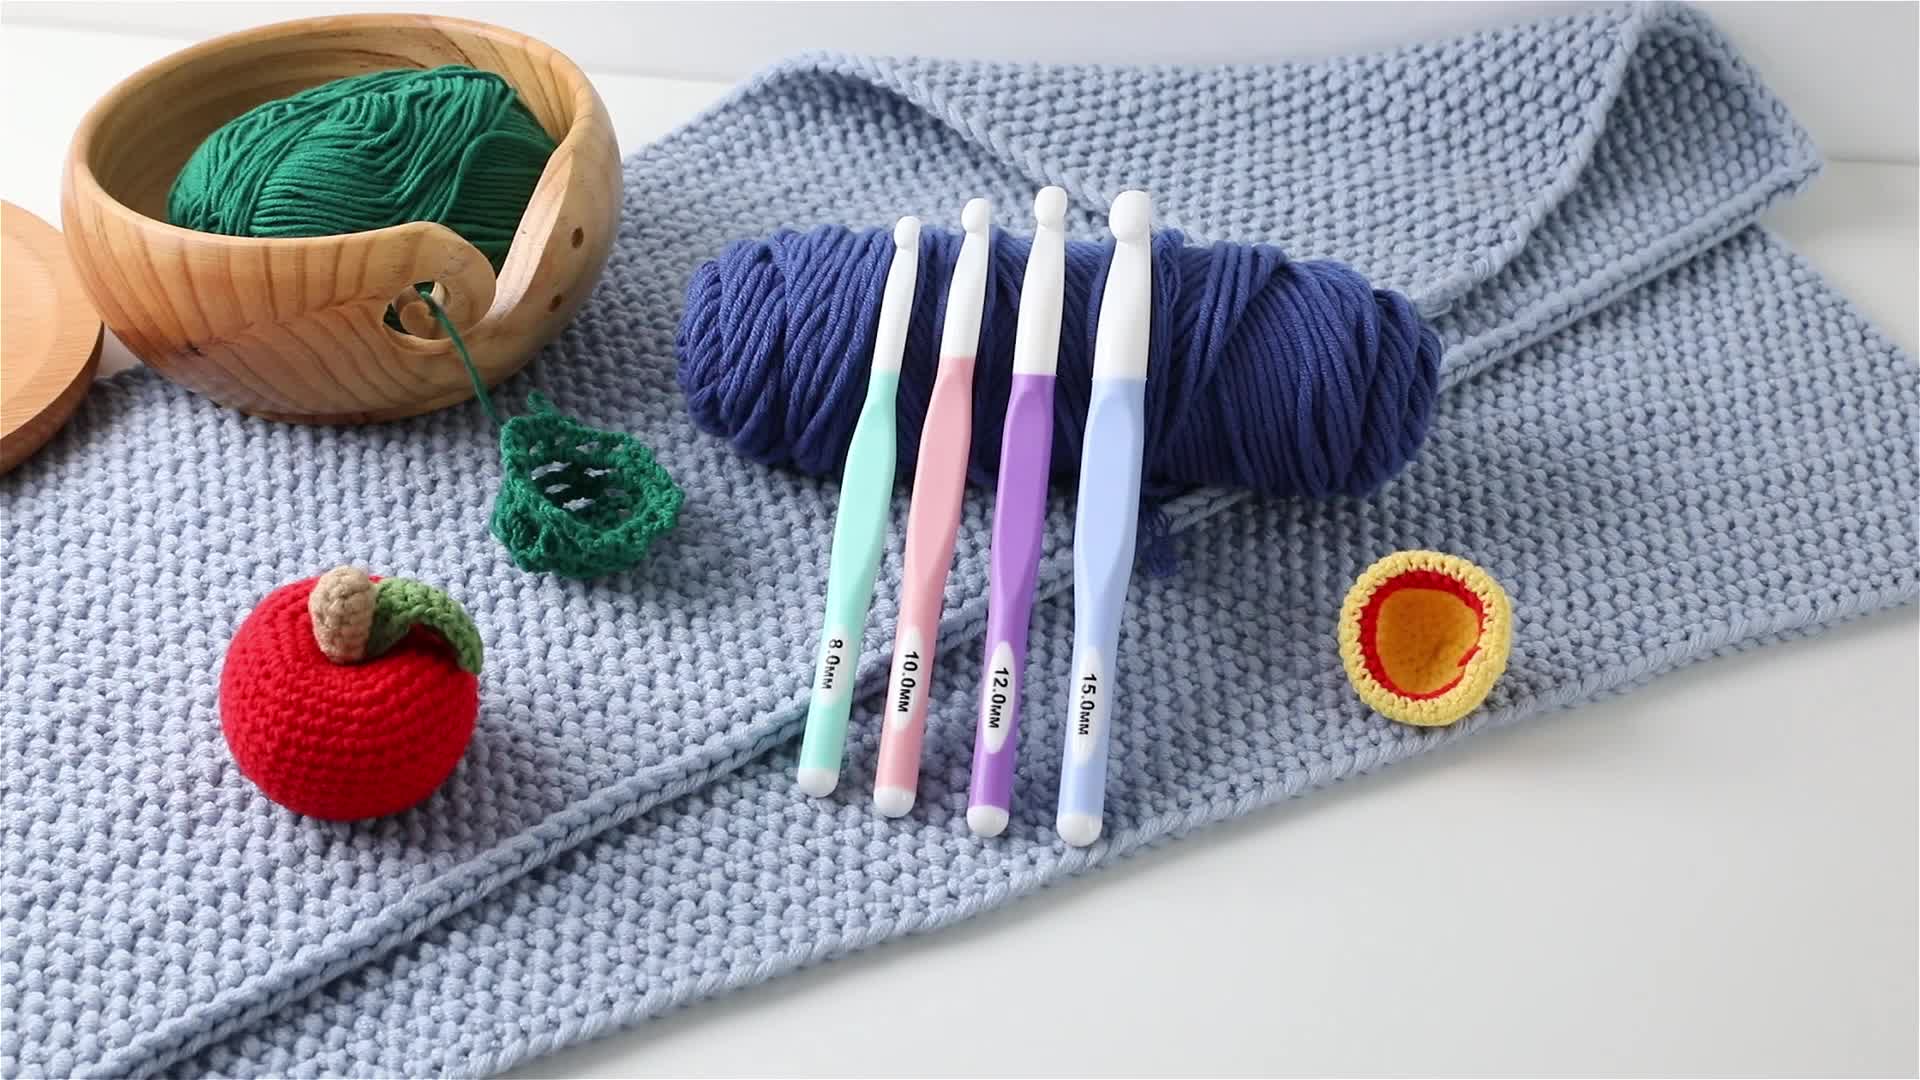 Crochet Hooks 4 pcs Large Sizes Crochet Hooks Ergonomic Crochet Needles Set  (8mm / 10mm / 12mm / 15mm)